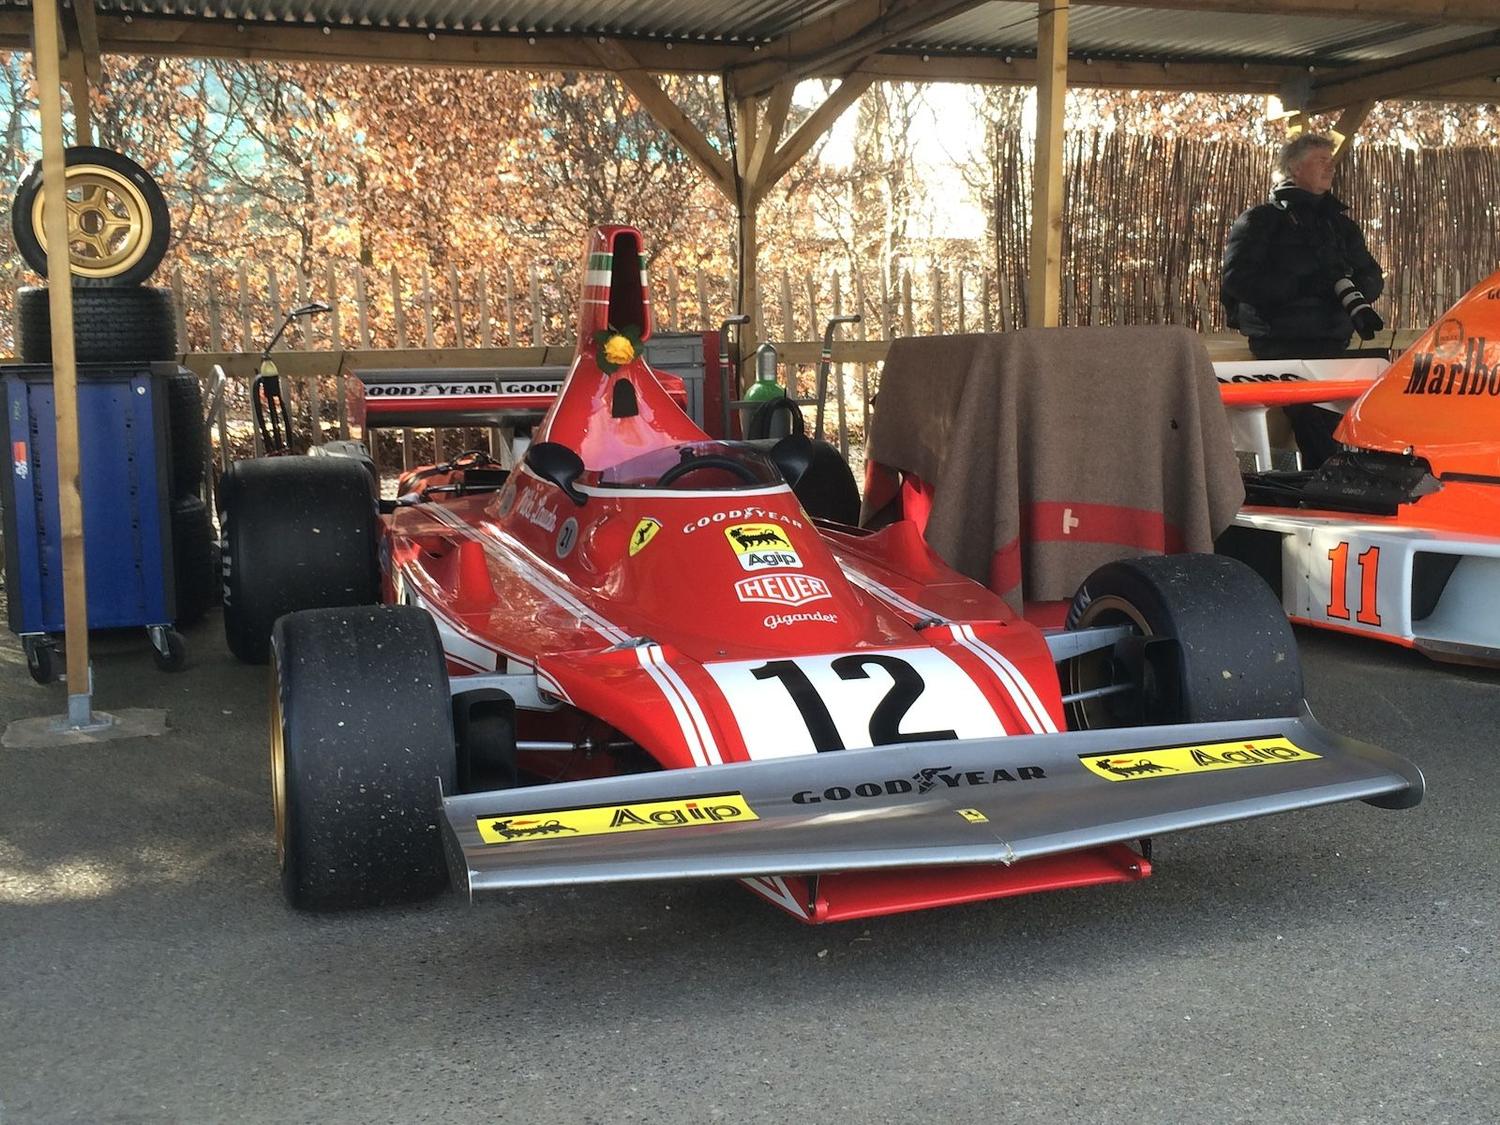 An ex-Niki Lauda Ferrari 312 B3 rests in the paddock at the 73rd Goodwood Members' Meeting